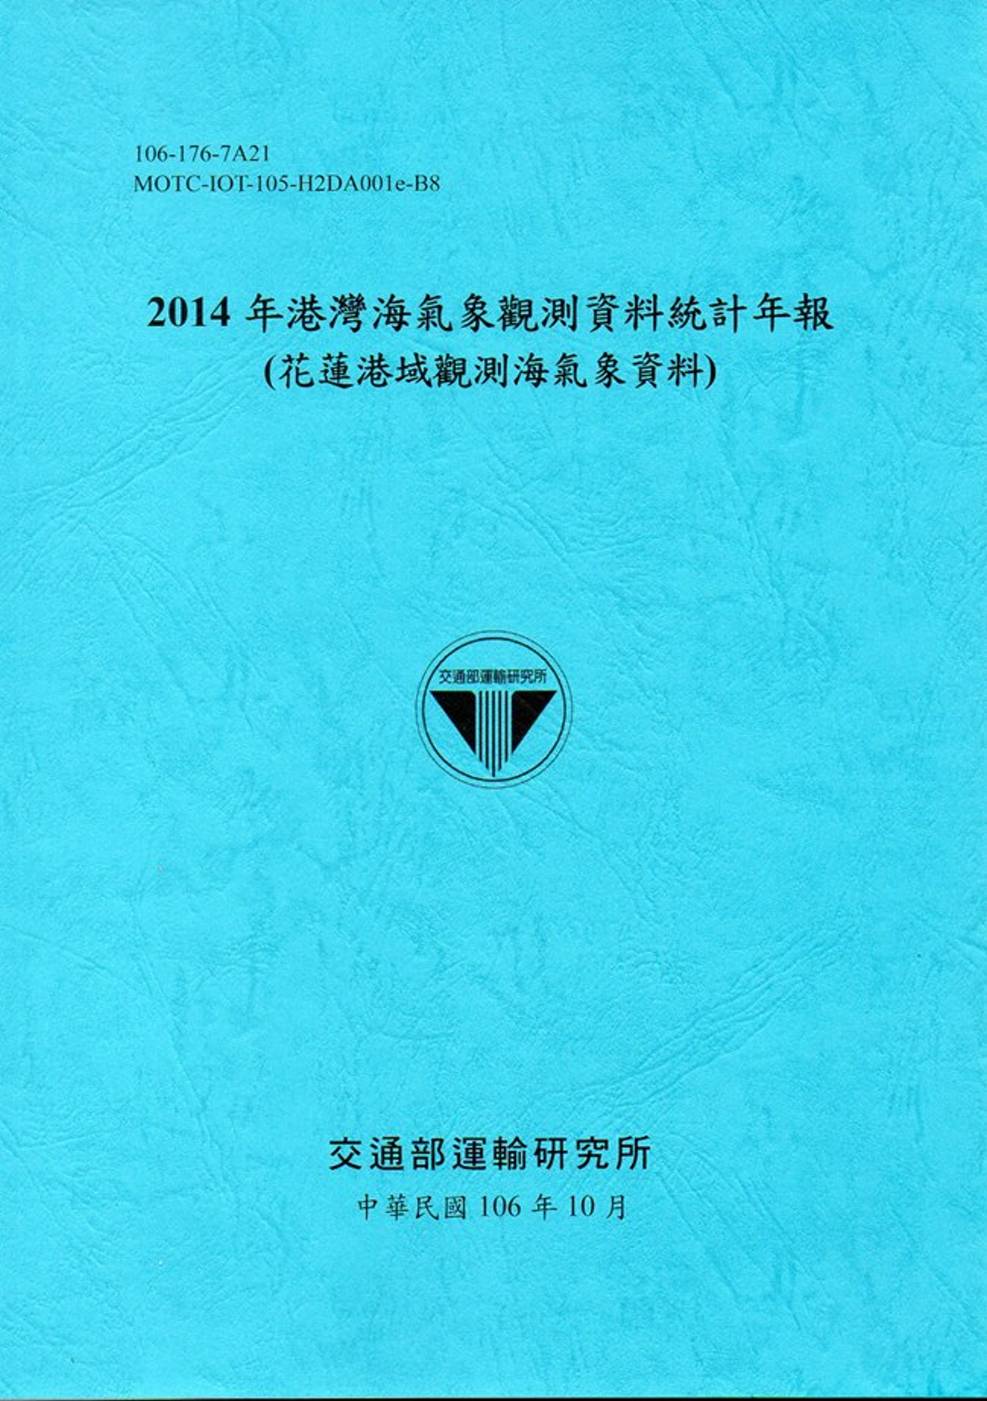 2014年港灣海氣象觀測資料統計年報(花蓮港域觀測海氣象資料)106深藍